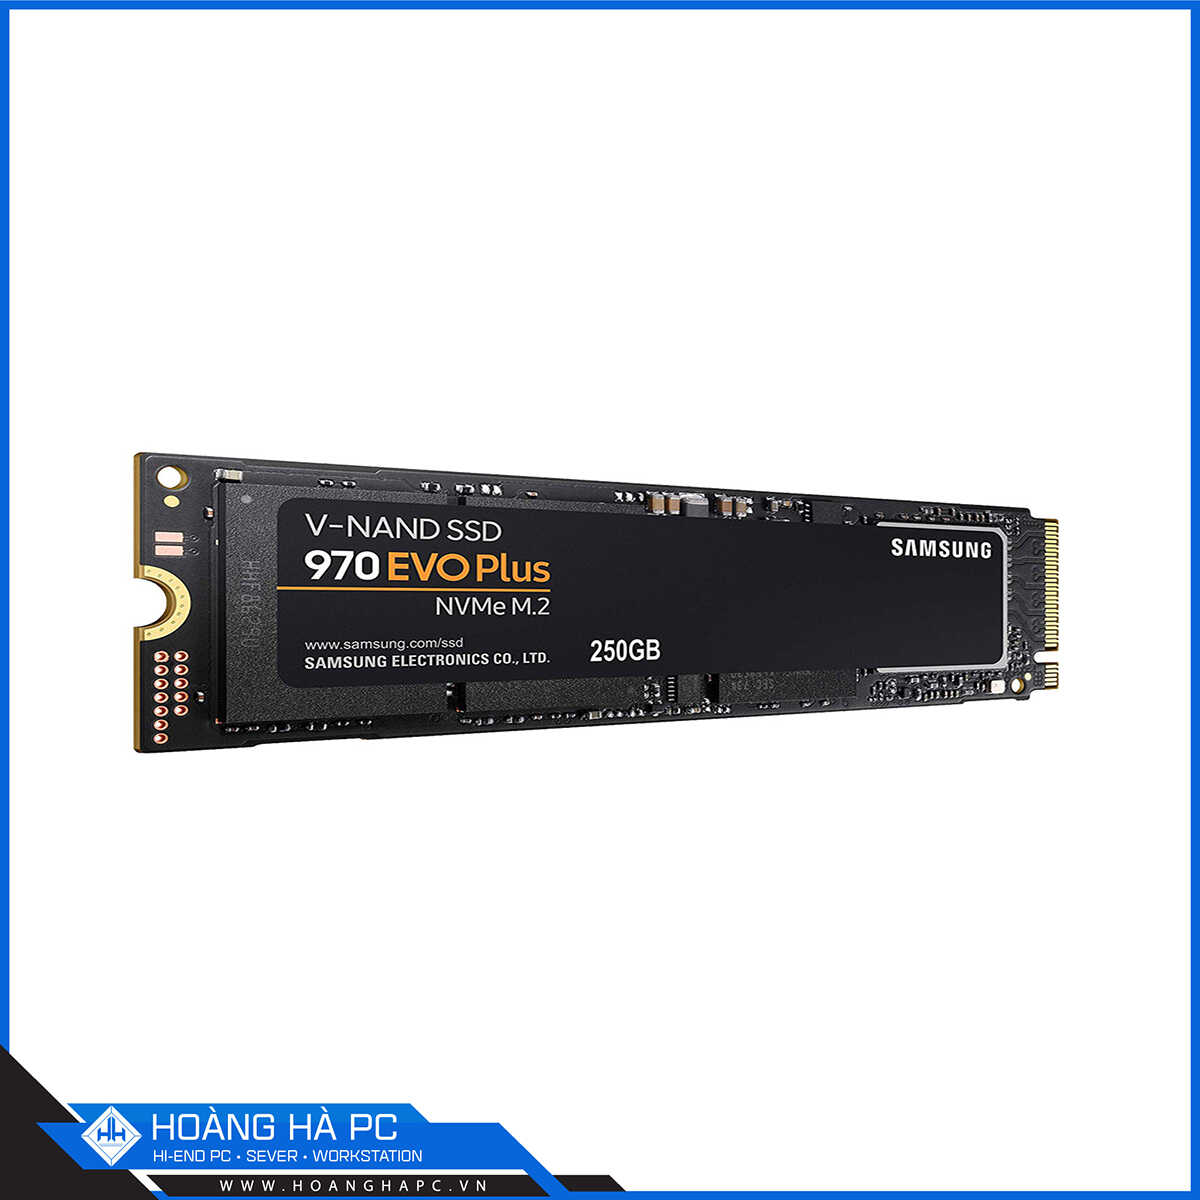 Ổ cứng SSD Samsung 970 Evo Plus 250GB M2.2280 NVMe PCIe 3.0x4 (Đọc 3500MB/s - Ghi 2300MB/s)